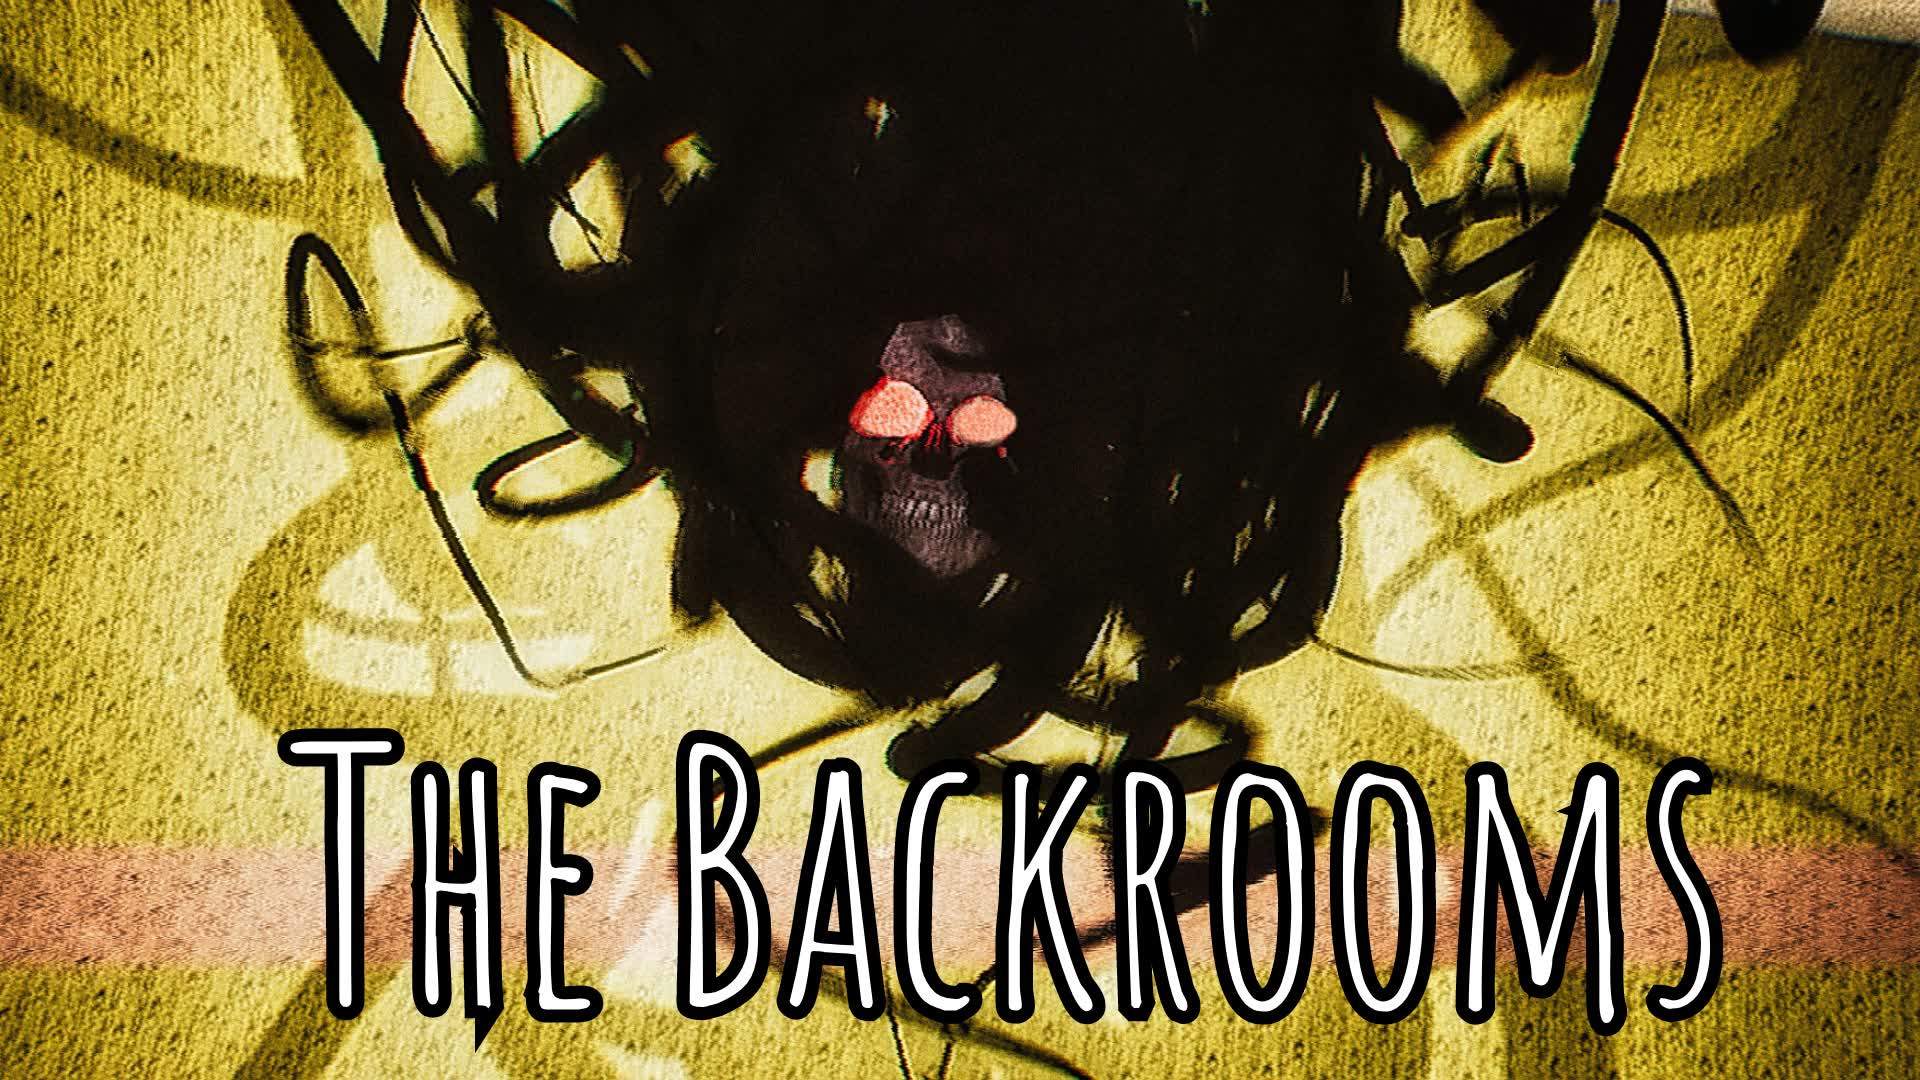 The Backrooms : Lobby